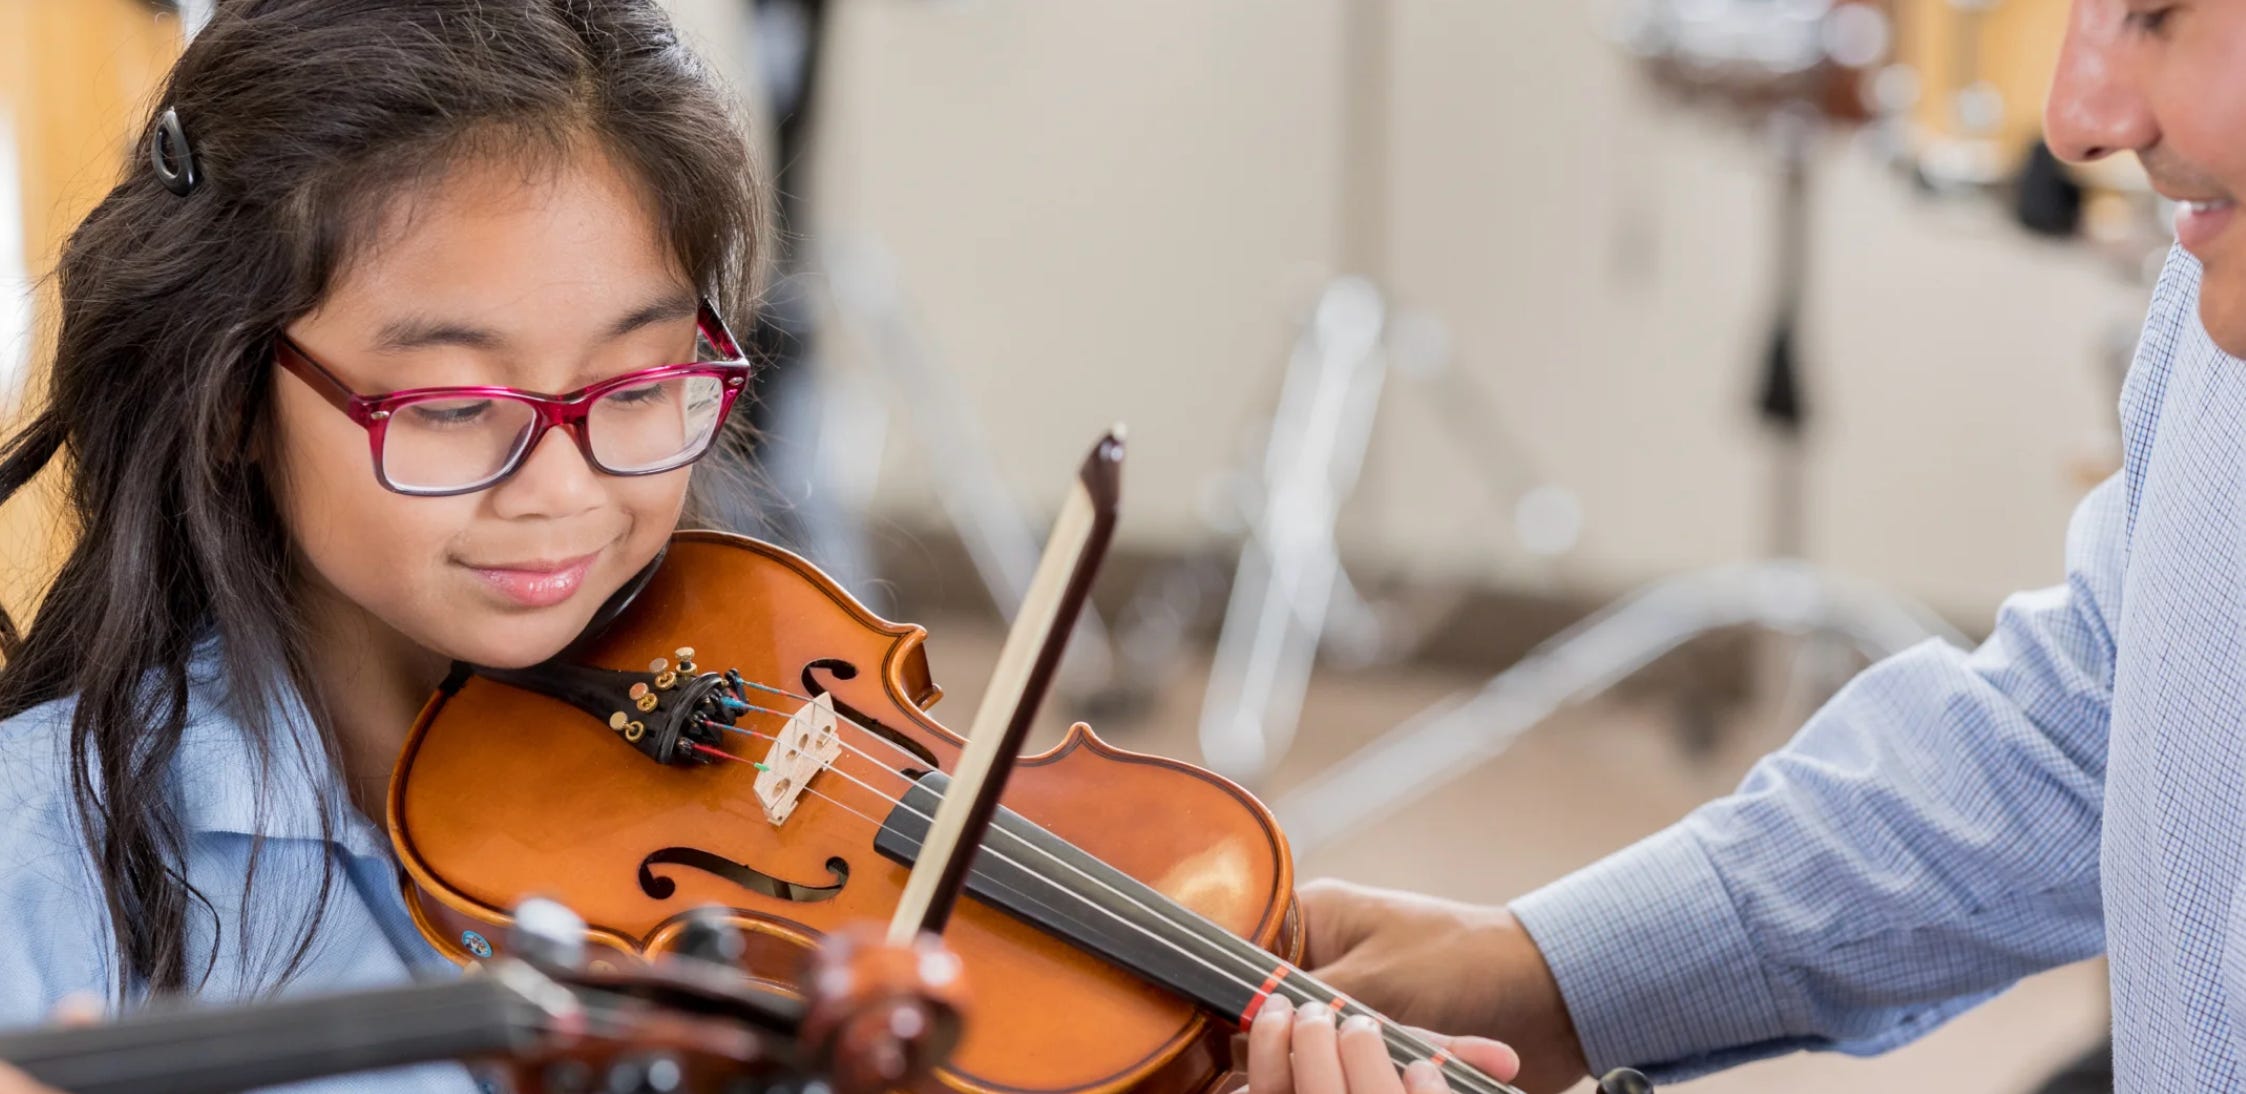  La formazione musicale può essere un superpotere per l'alfabetizzazione